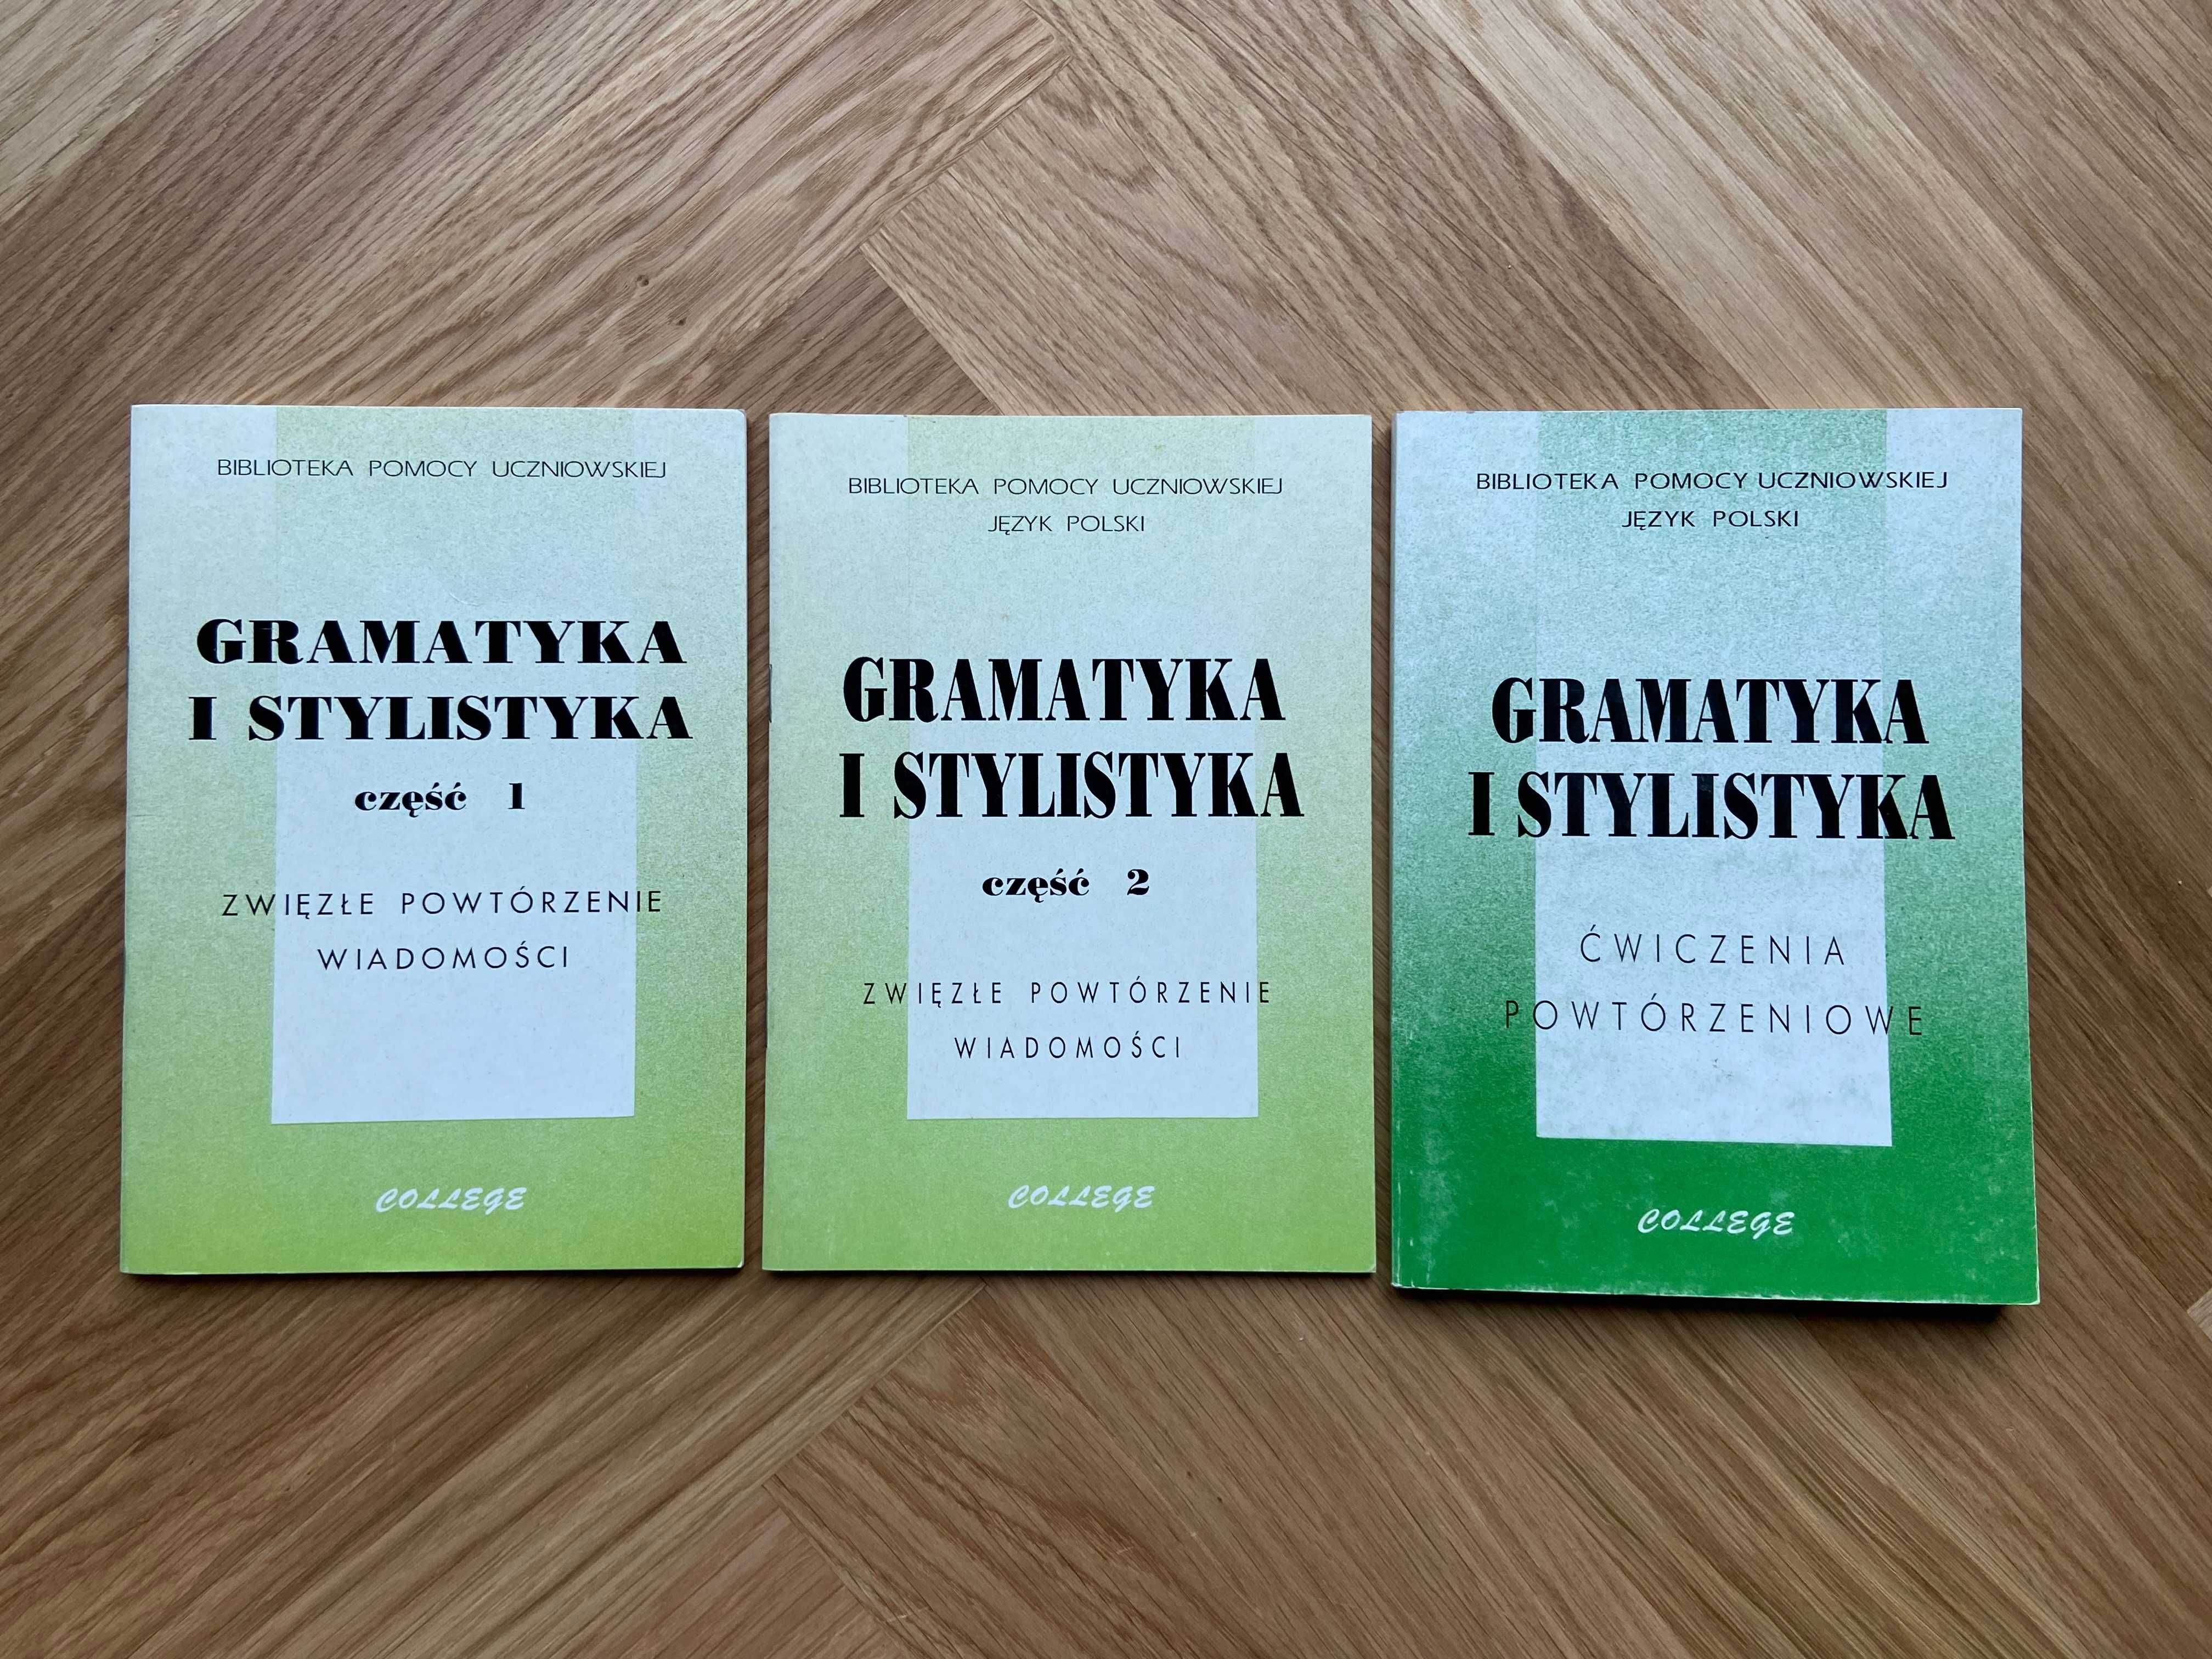 Gramatyka i stylistyka - teoria i ćwiczenia dla szkoły podstawowej